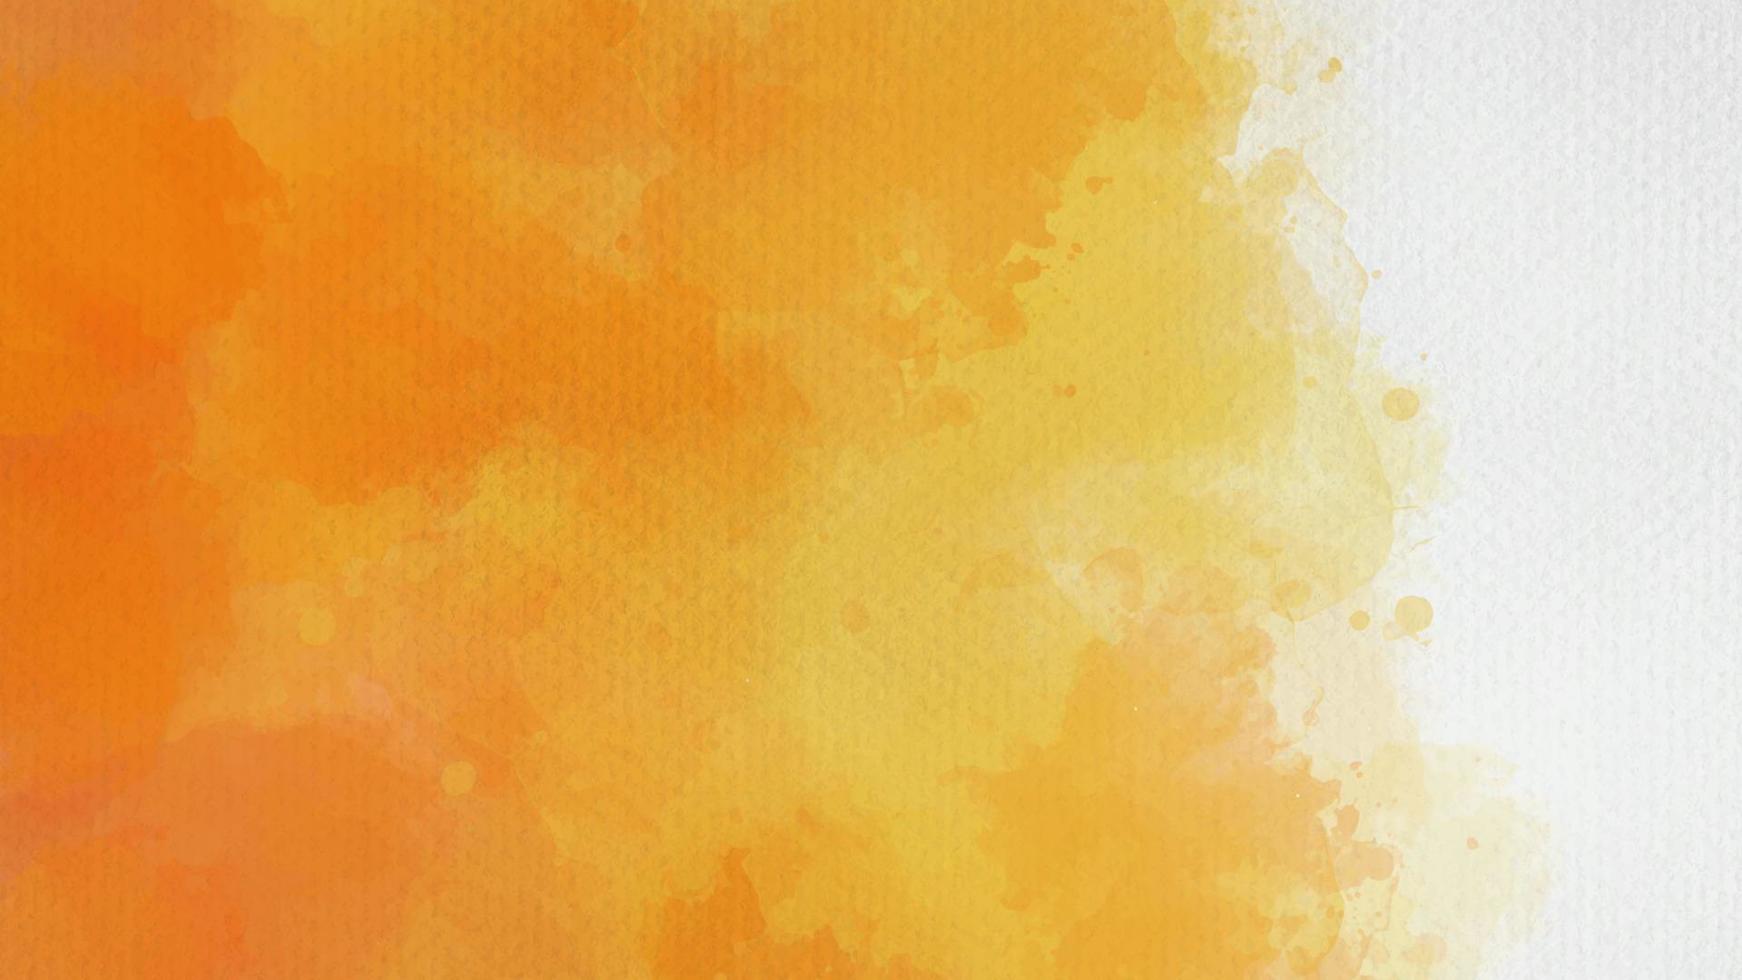 Nếu bạn yêu thích hoa văn nước, những bức tranh tay vẽ rực rỡ màu cam và vàng sẽ đem lại nét đặc biệt cho không gian sống của bạn. Khám phá ngay những bức ảnh đầy màu sắc và sự sáng tạo.